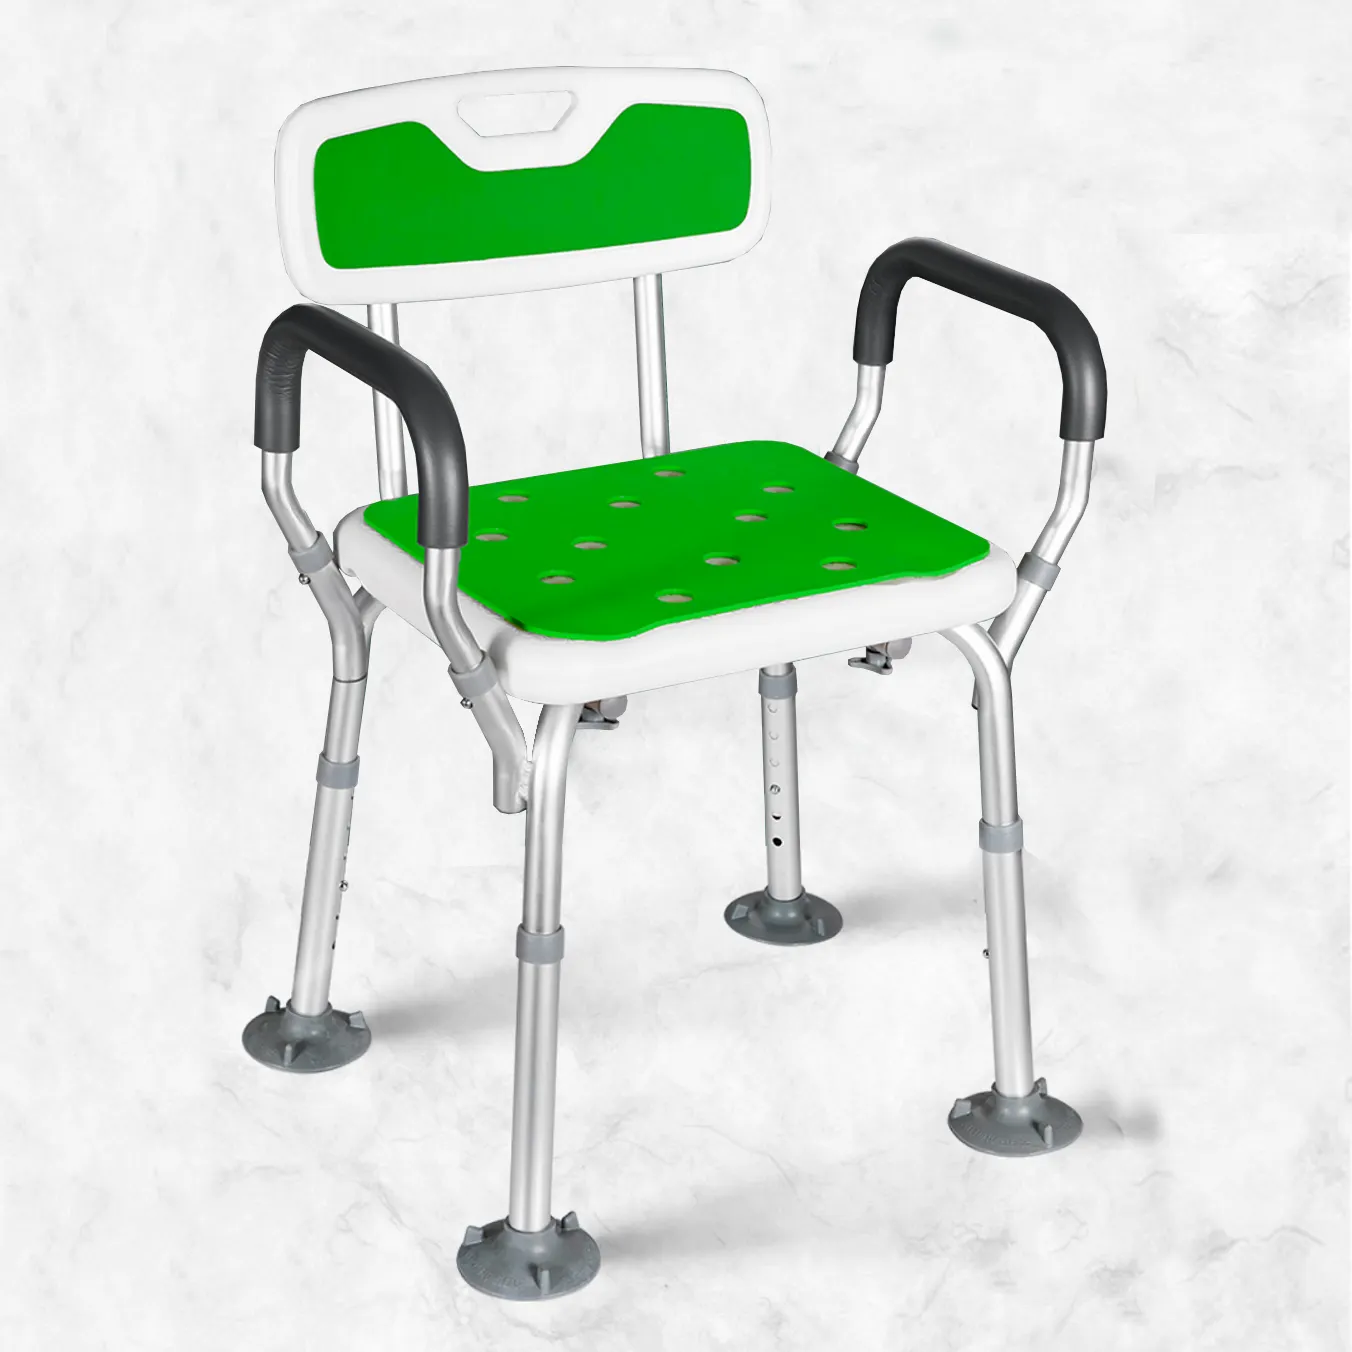 الألومنيوم سبائك ارتفاع قابل للتعديل كرسي استحمام مع مسند الظهر كرسي استحمام للانفصال ل المسنين